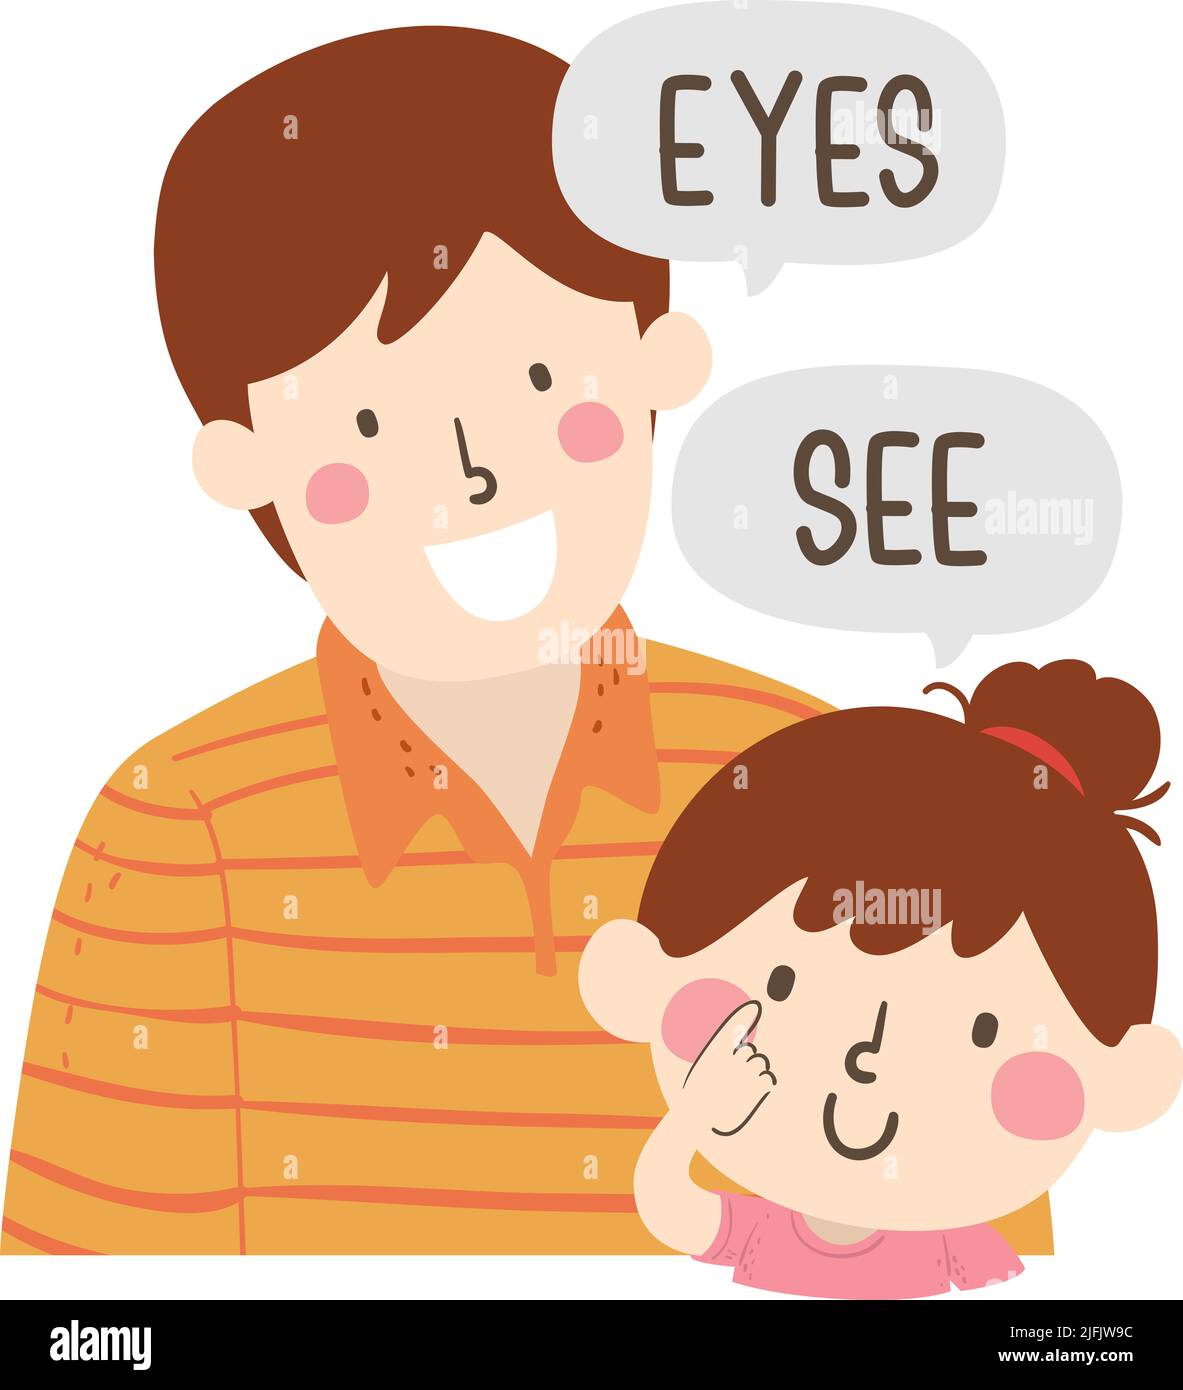 Ilustración de Kid Girl con la mano señalando los ojos diciendo Ver, Papá enseñando parte del cuerpo diciendo los ojos Foto de stock